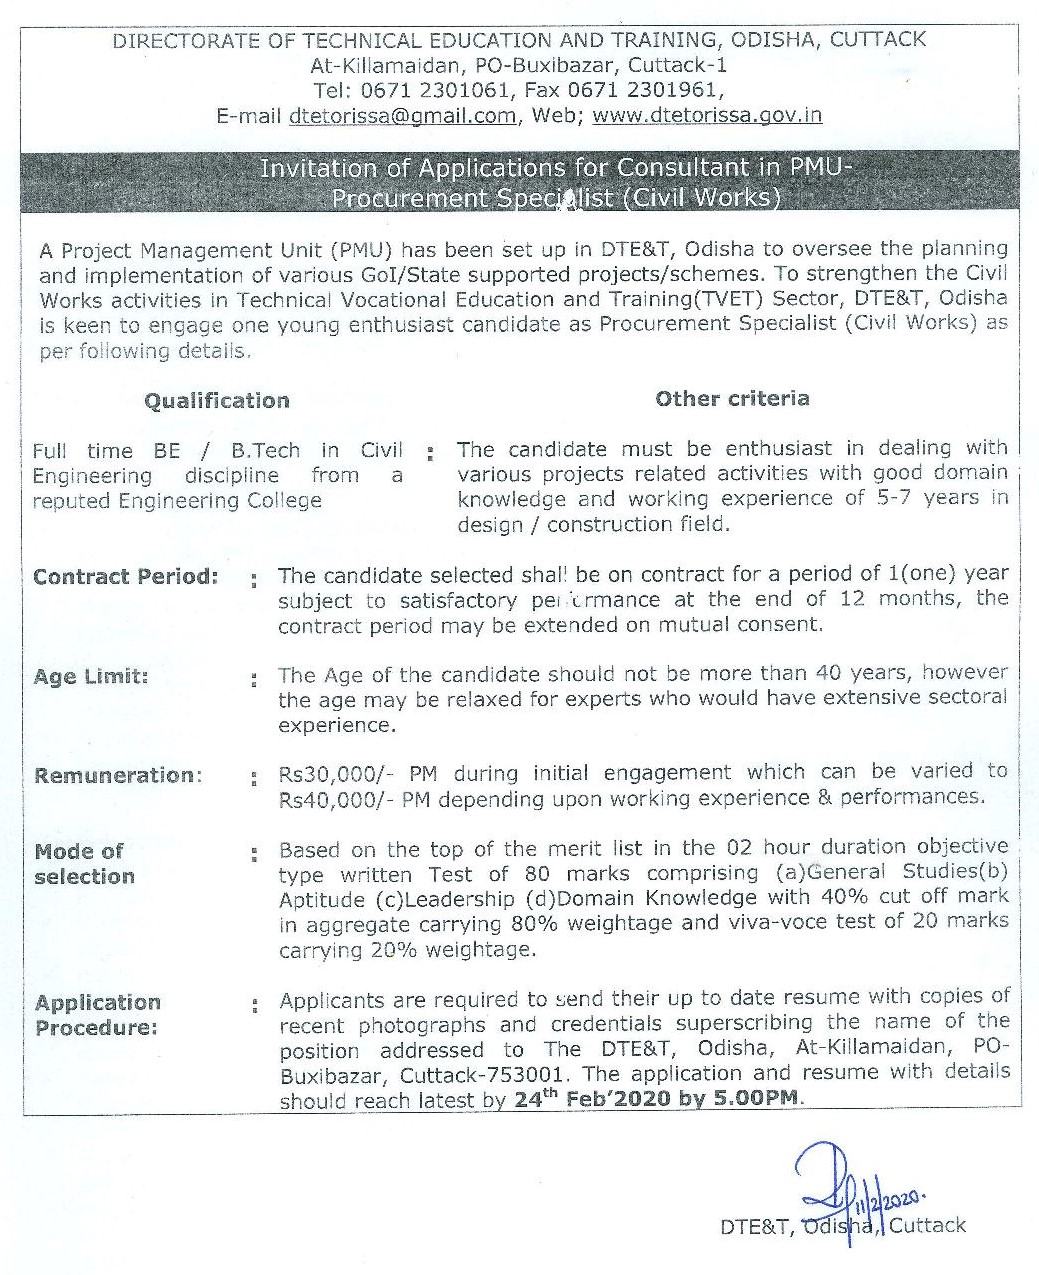 DTET Odisha Recruitment 2020